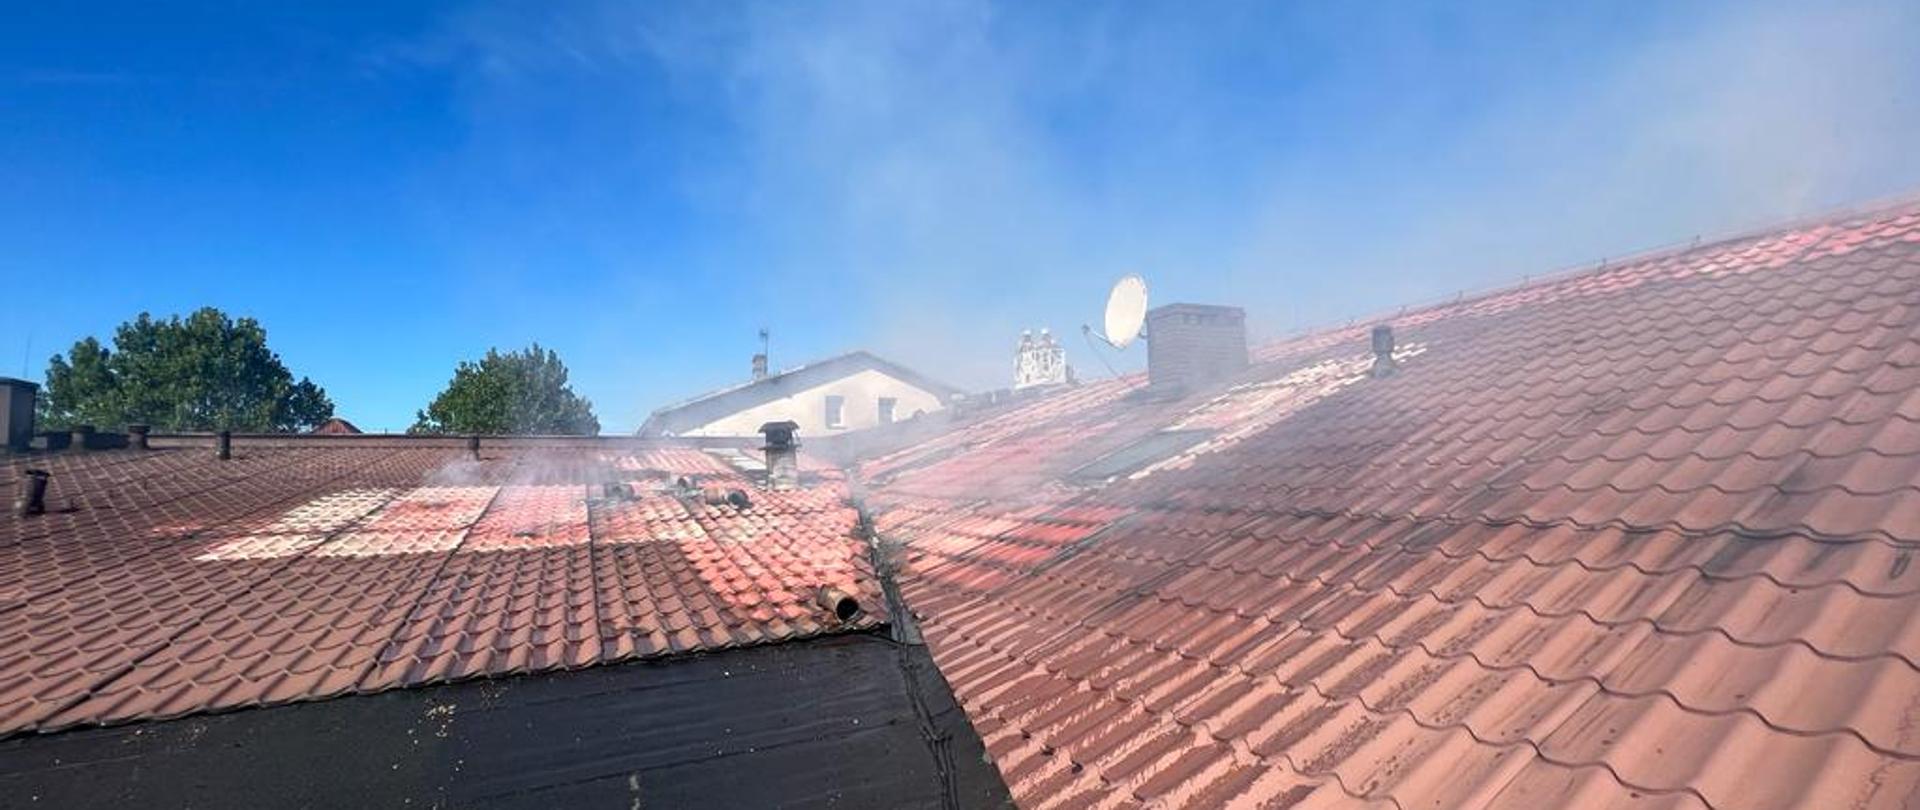 Dach z czerwonej dachówki nad którym unosi się biały dym.